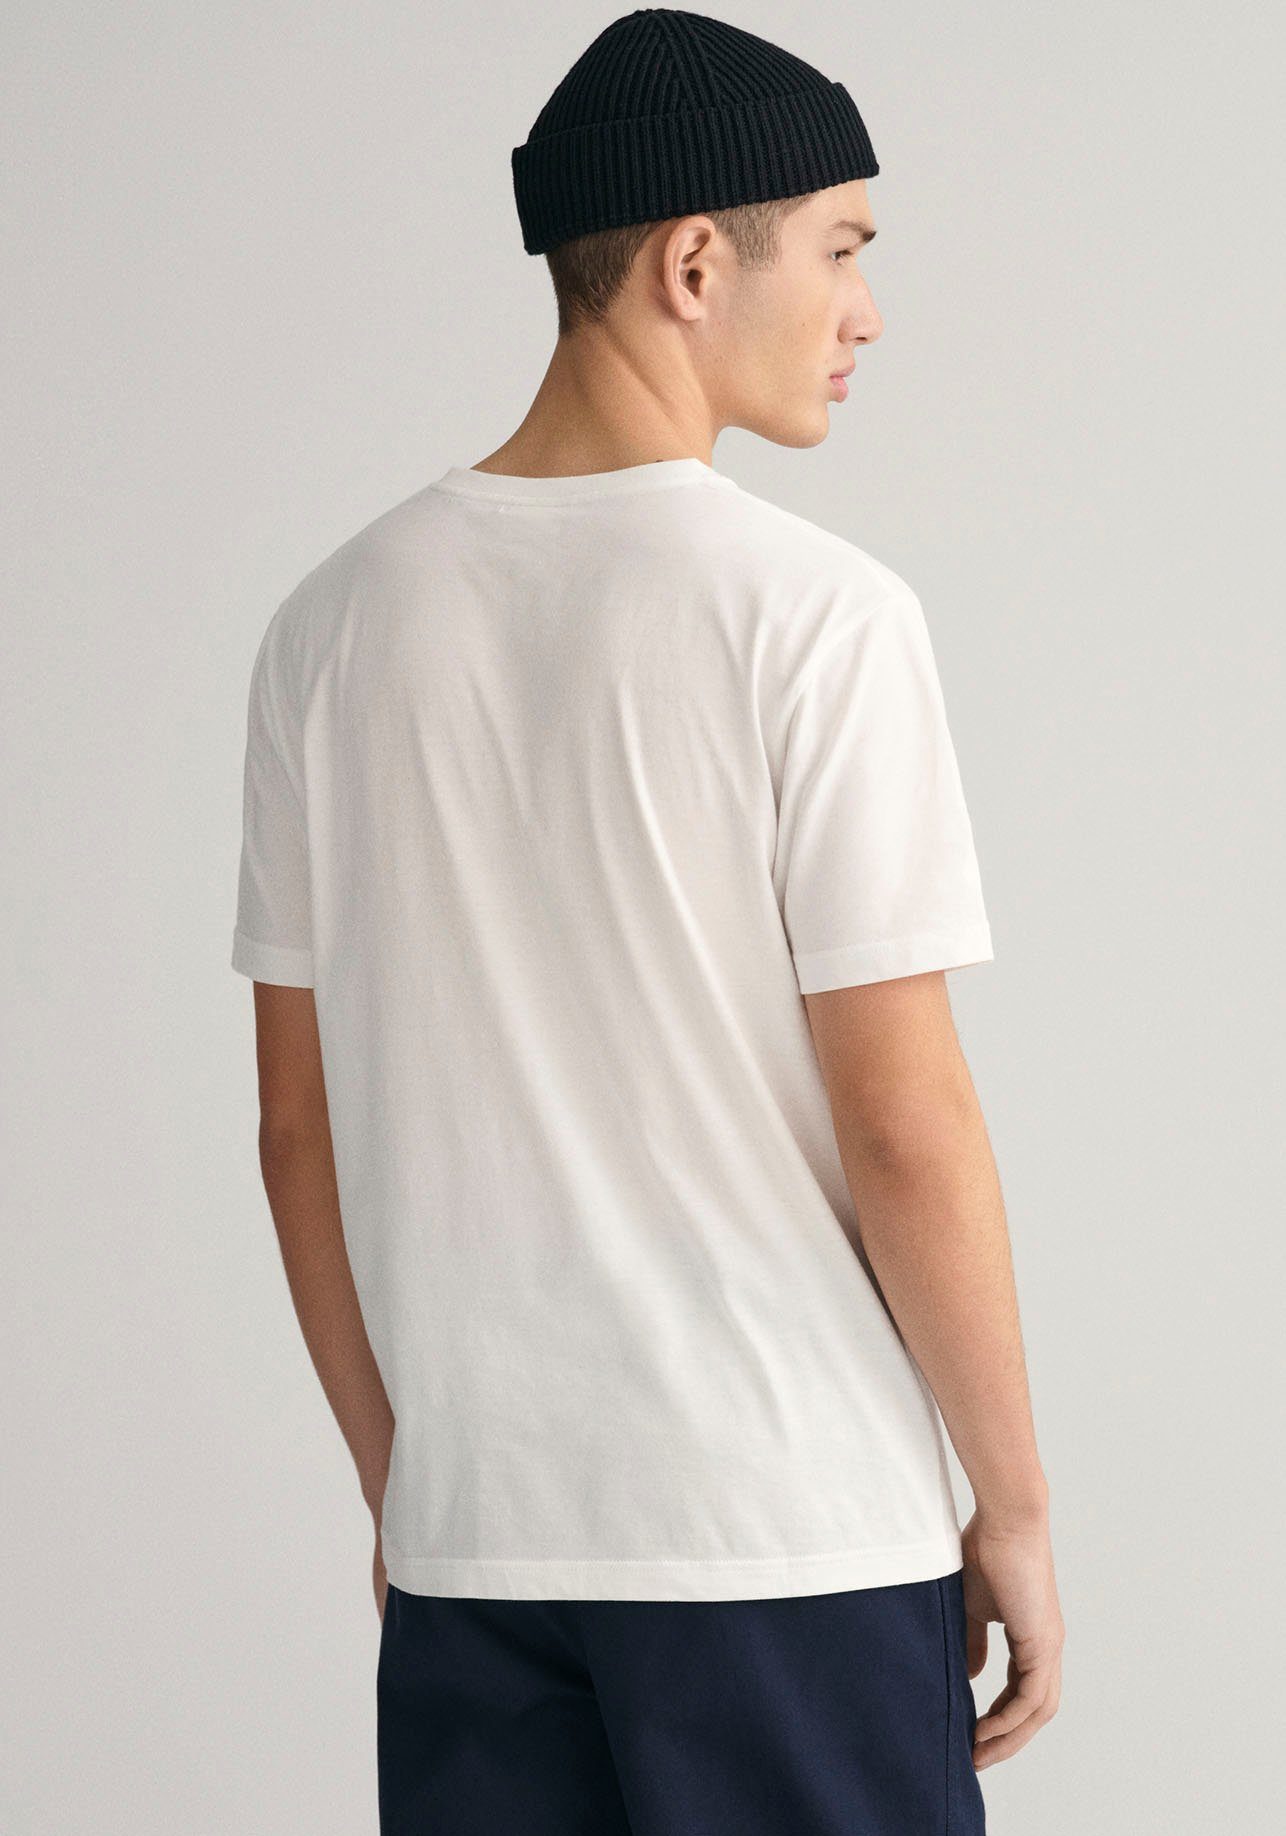 REG EMB inspiriert Gant Archiv 1980er-Jahren aus SHIELD T-Shirt SS T-SHIRT dem den ARCHIVE von white